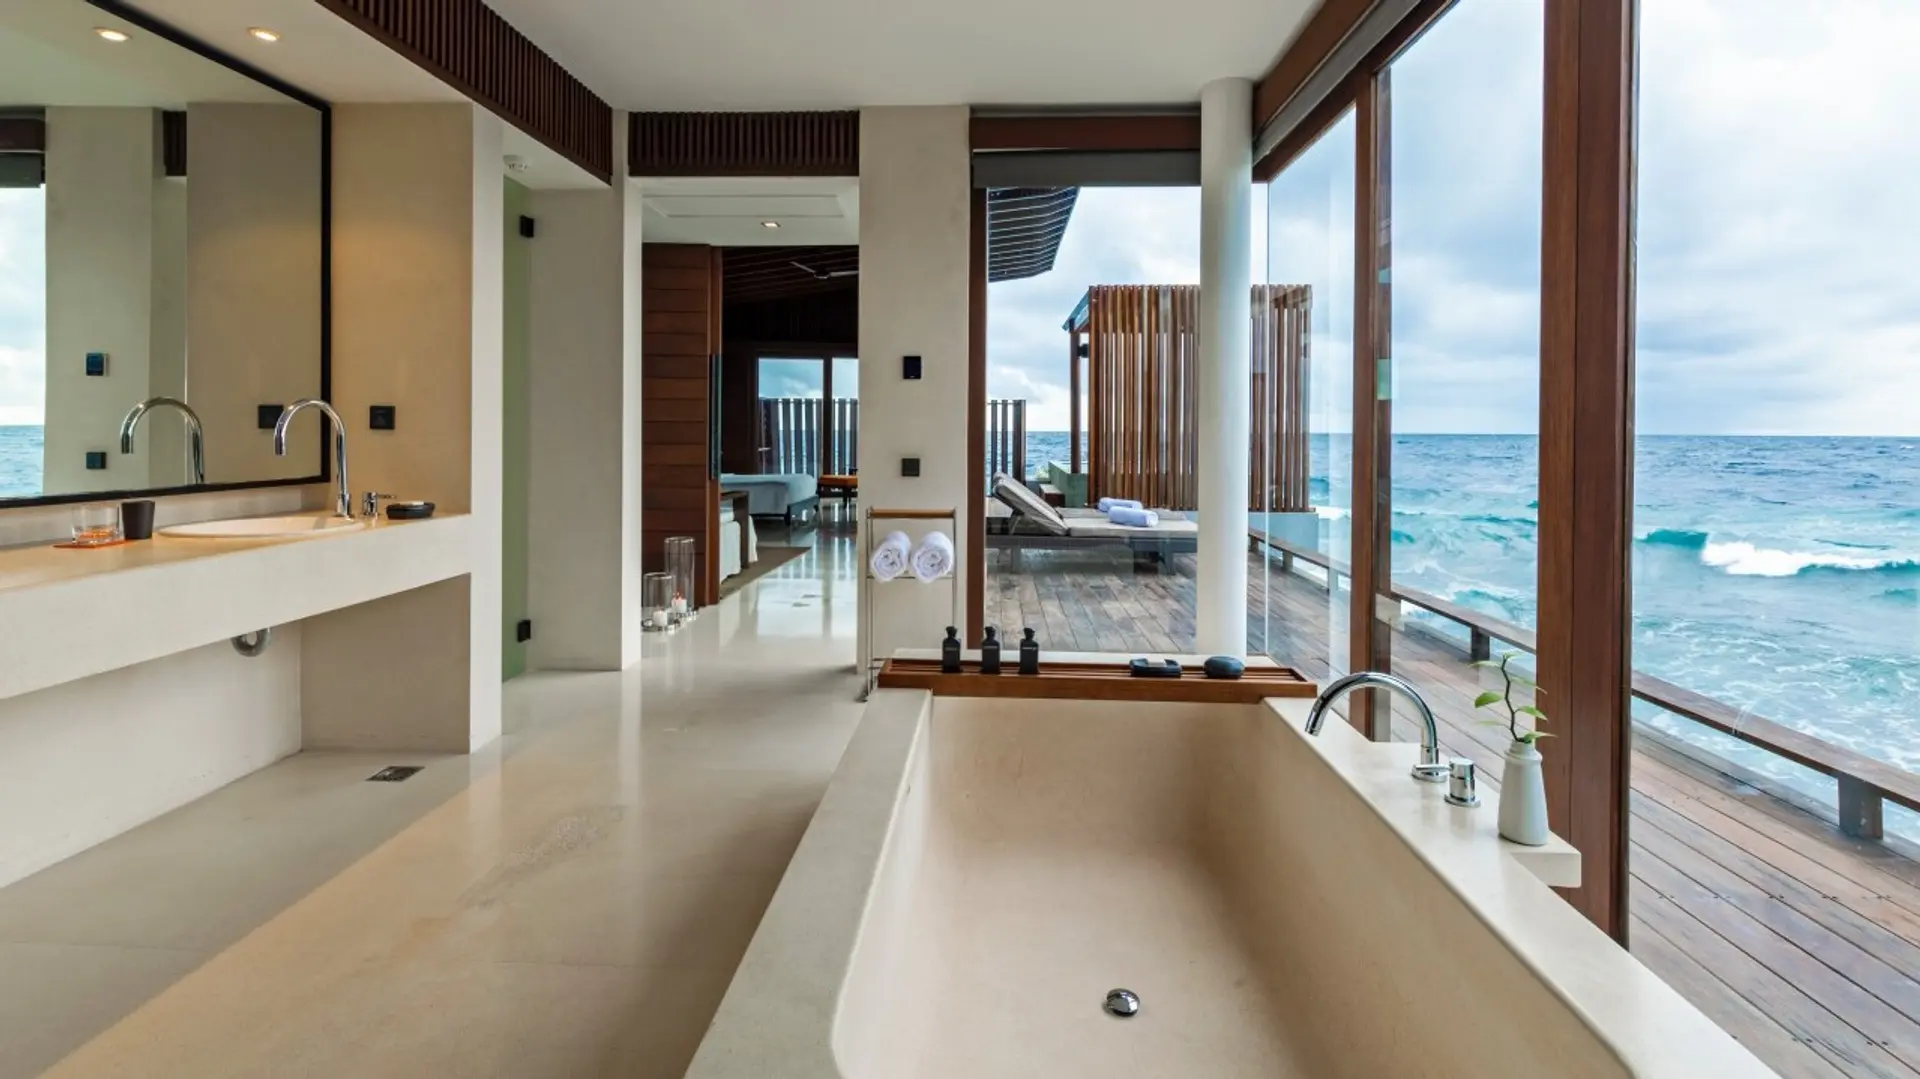 Hotel review Accommodation' - Park Hyatt Maldives Hadahaa - 14